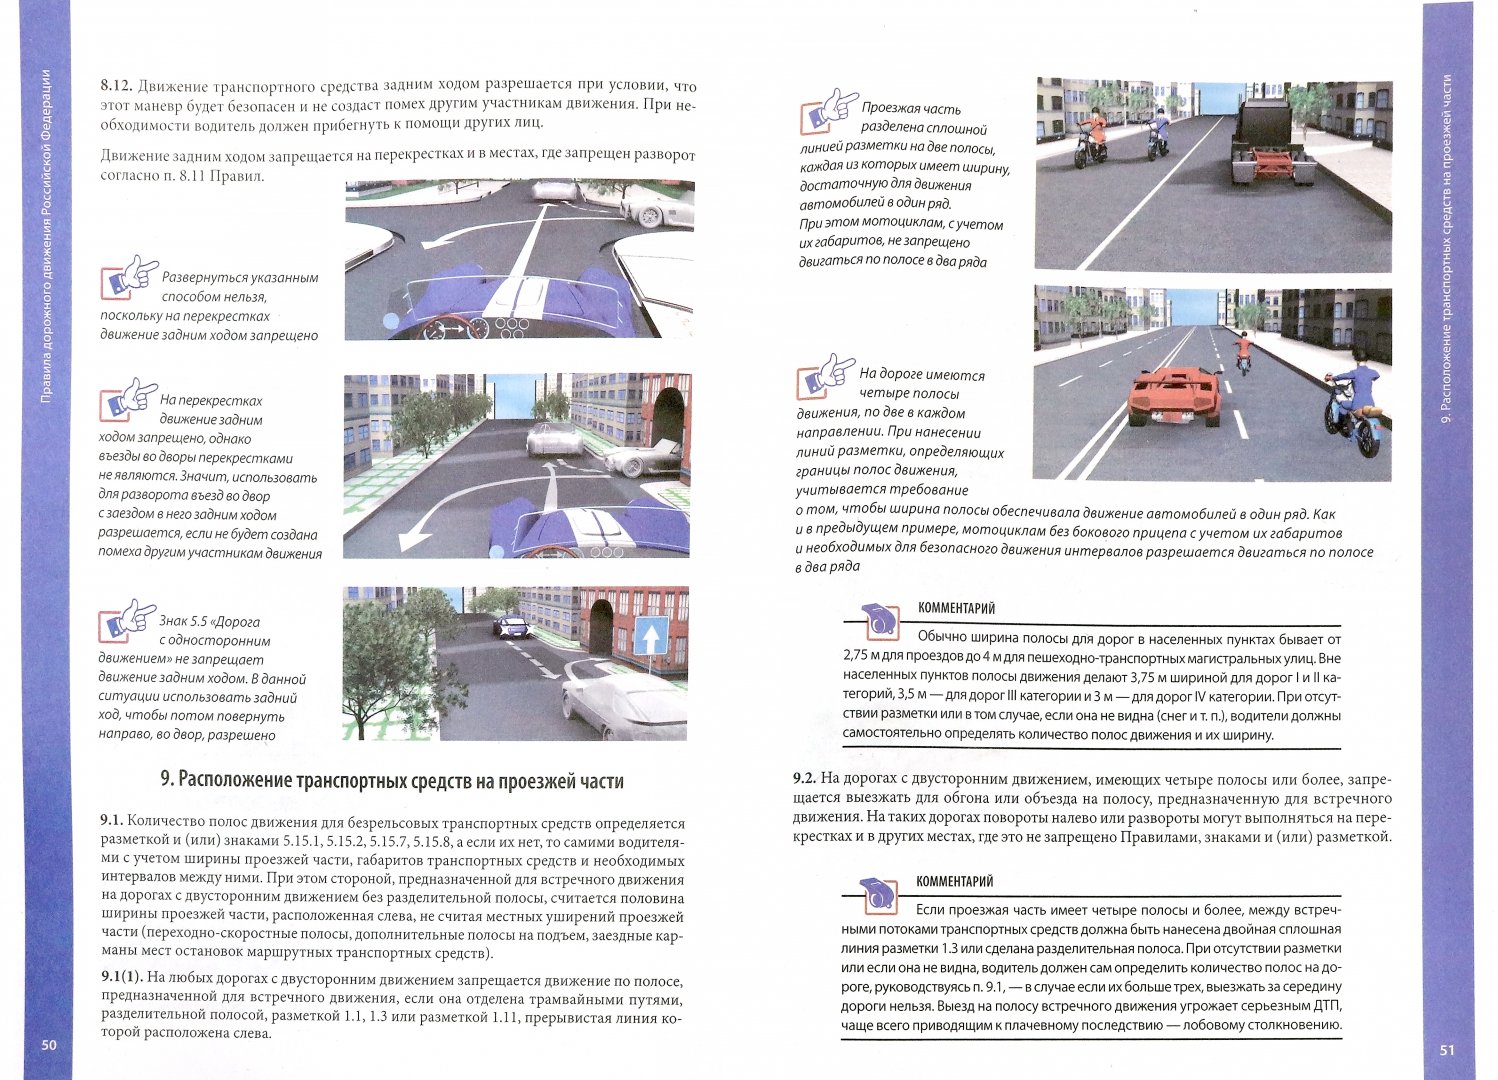 Иллюстрация 1 из 5 для Правила дорожного движения 2019 с примечаниями и комментариями | Лабиринт - книги. Источник: Лабиринт